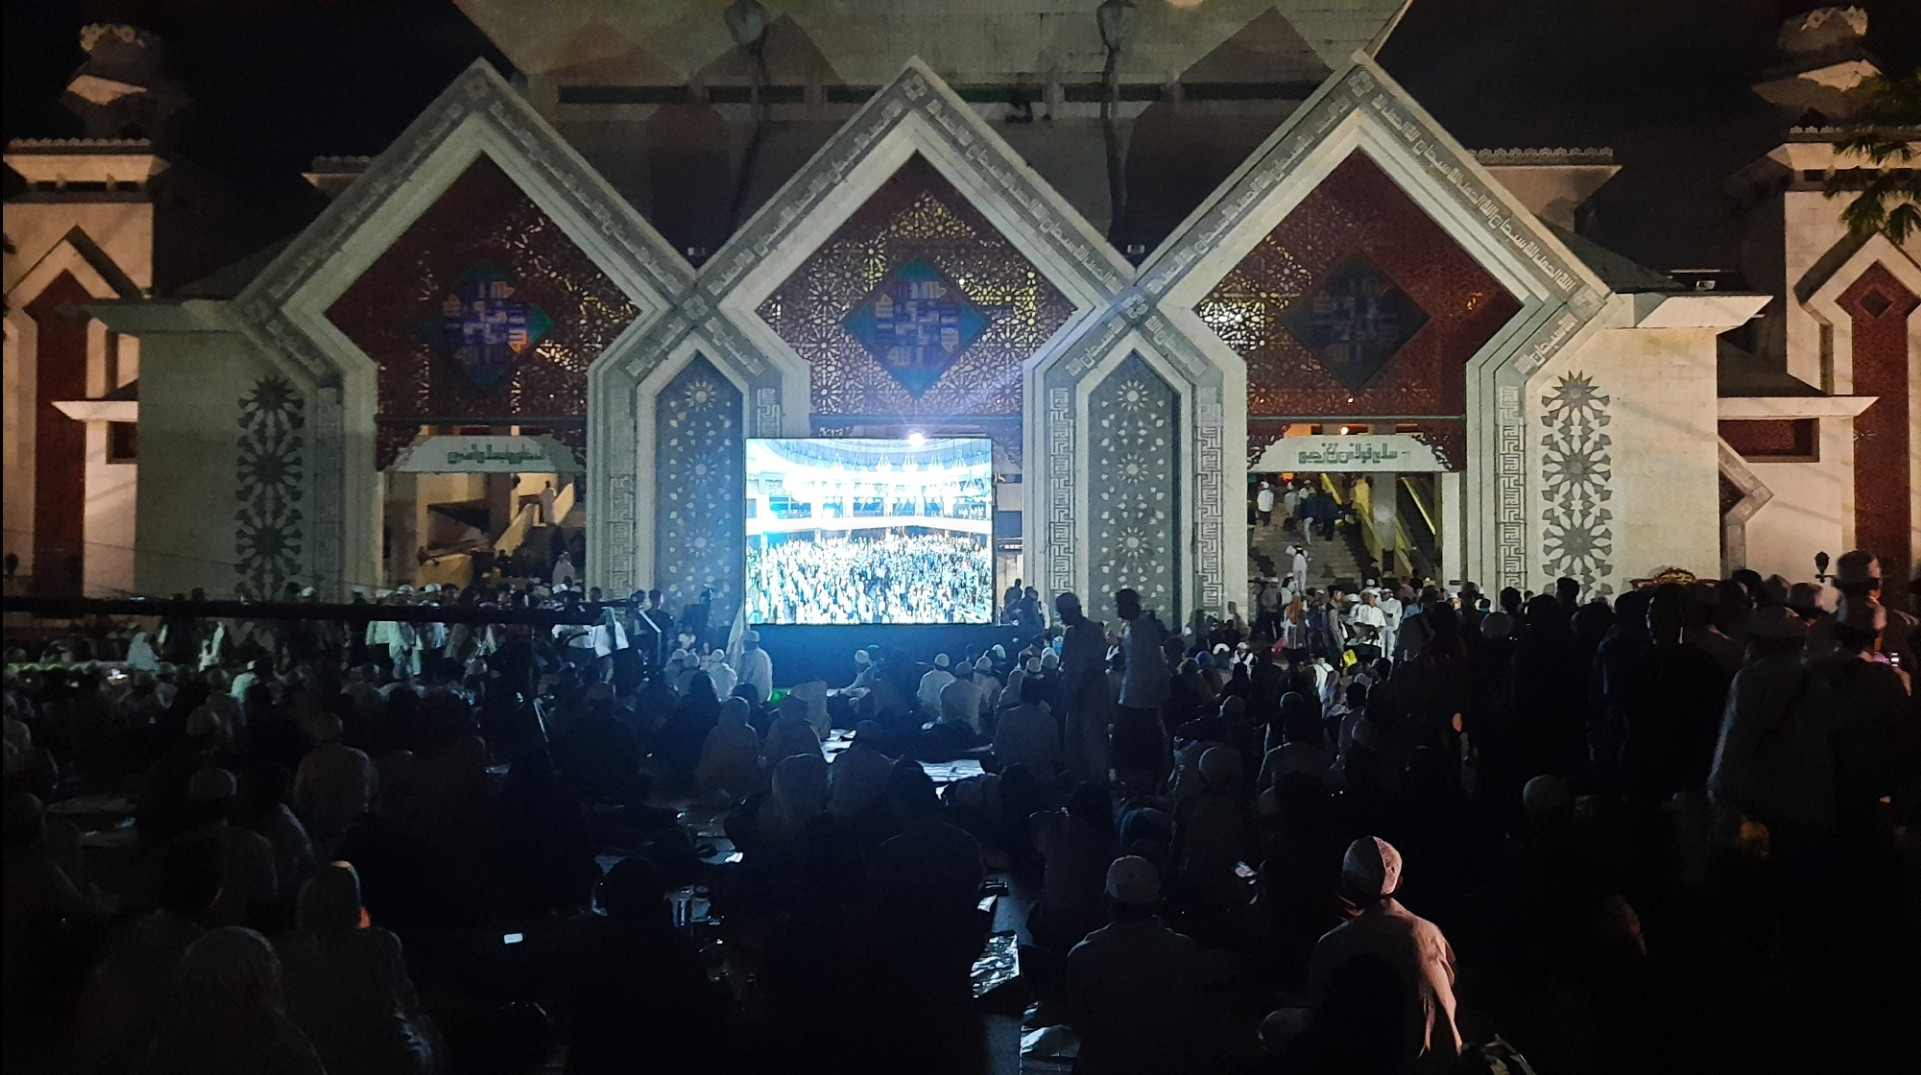 Ribuan Peserta Reuni 212 Sudah Berkumpul di Masjid At-Tin, Lihat - JPNN.com